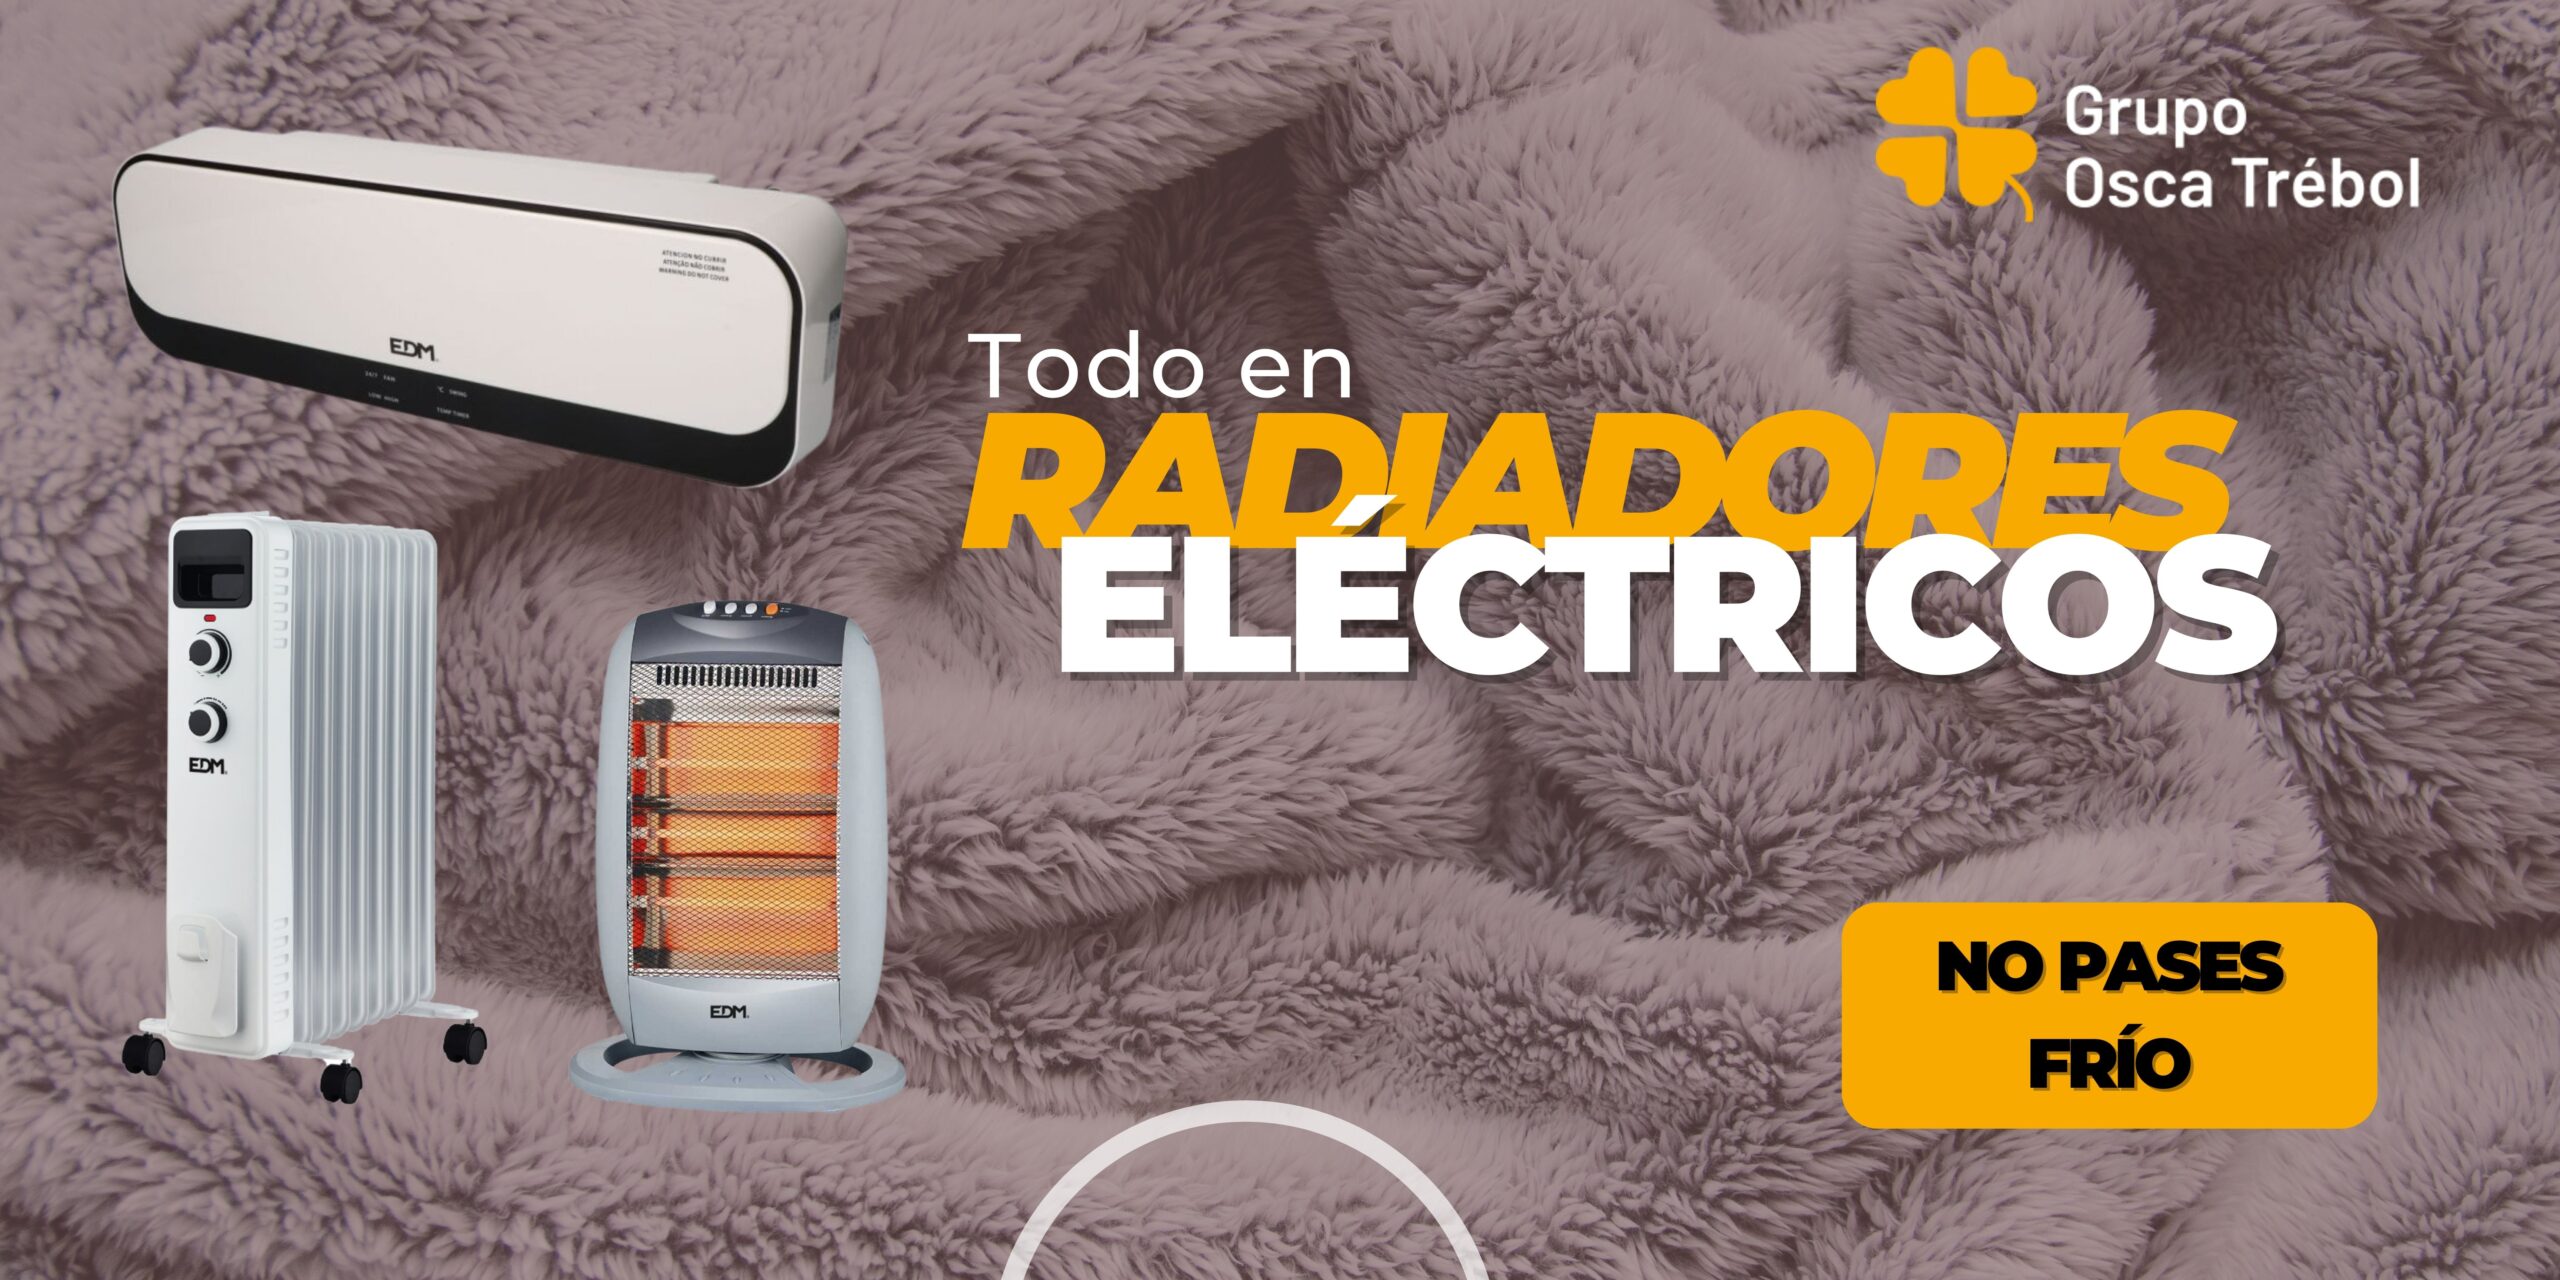 Portada de una ferretería online Ferretería El Trébol todo en radiadores eléctricos